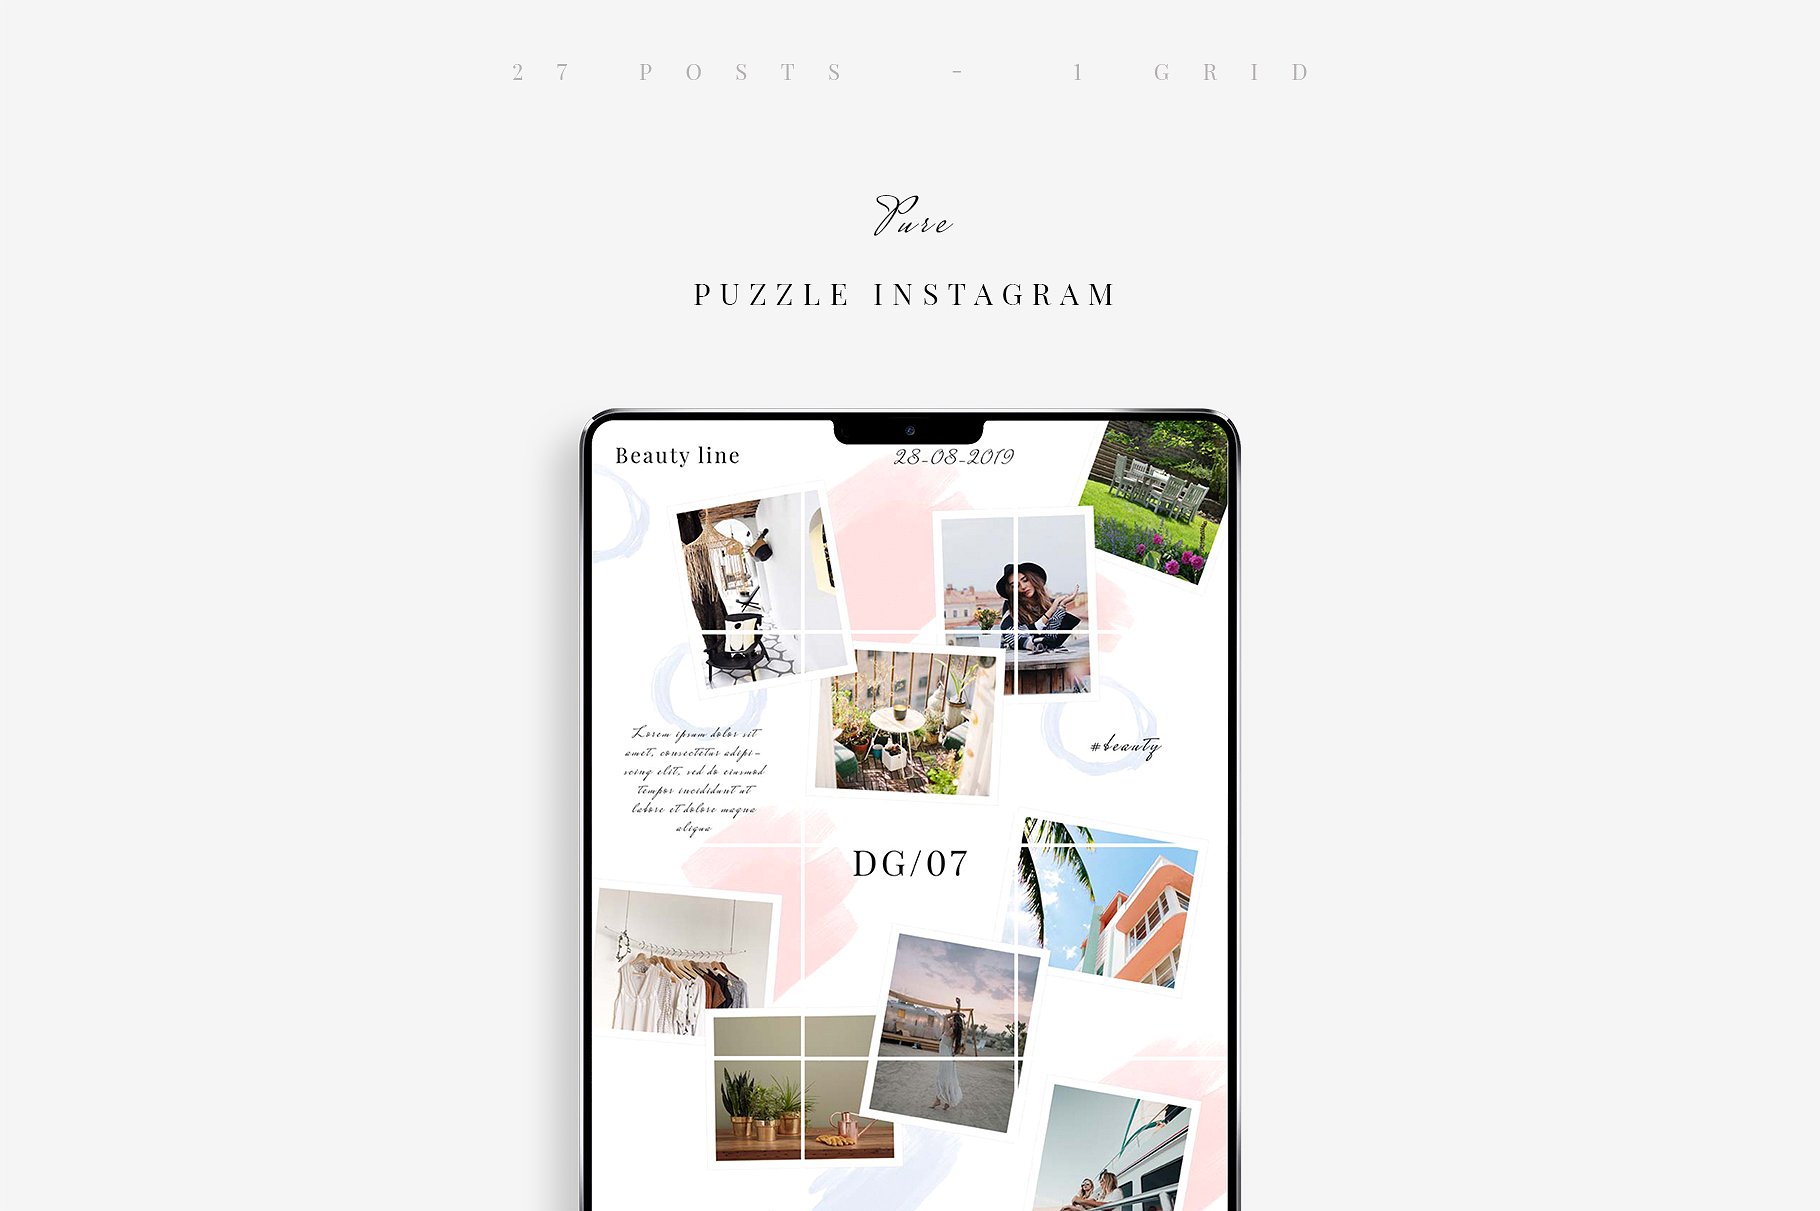 Instagram创意拼贴图片模板第一素材精选 Pure Puzzle Instagram插图